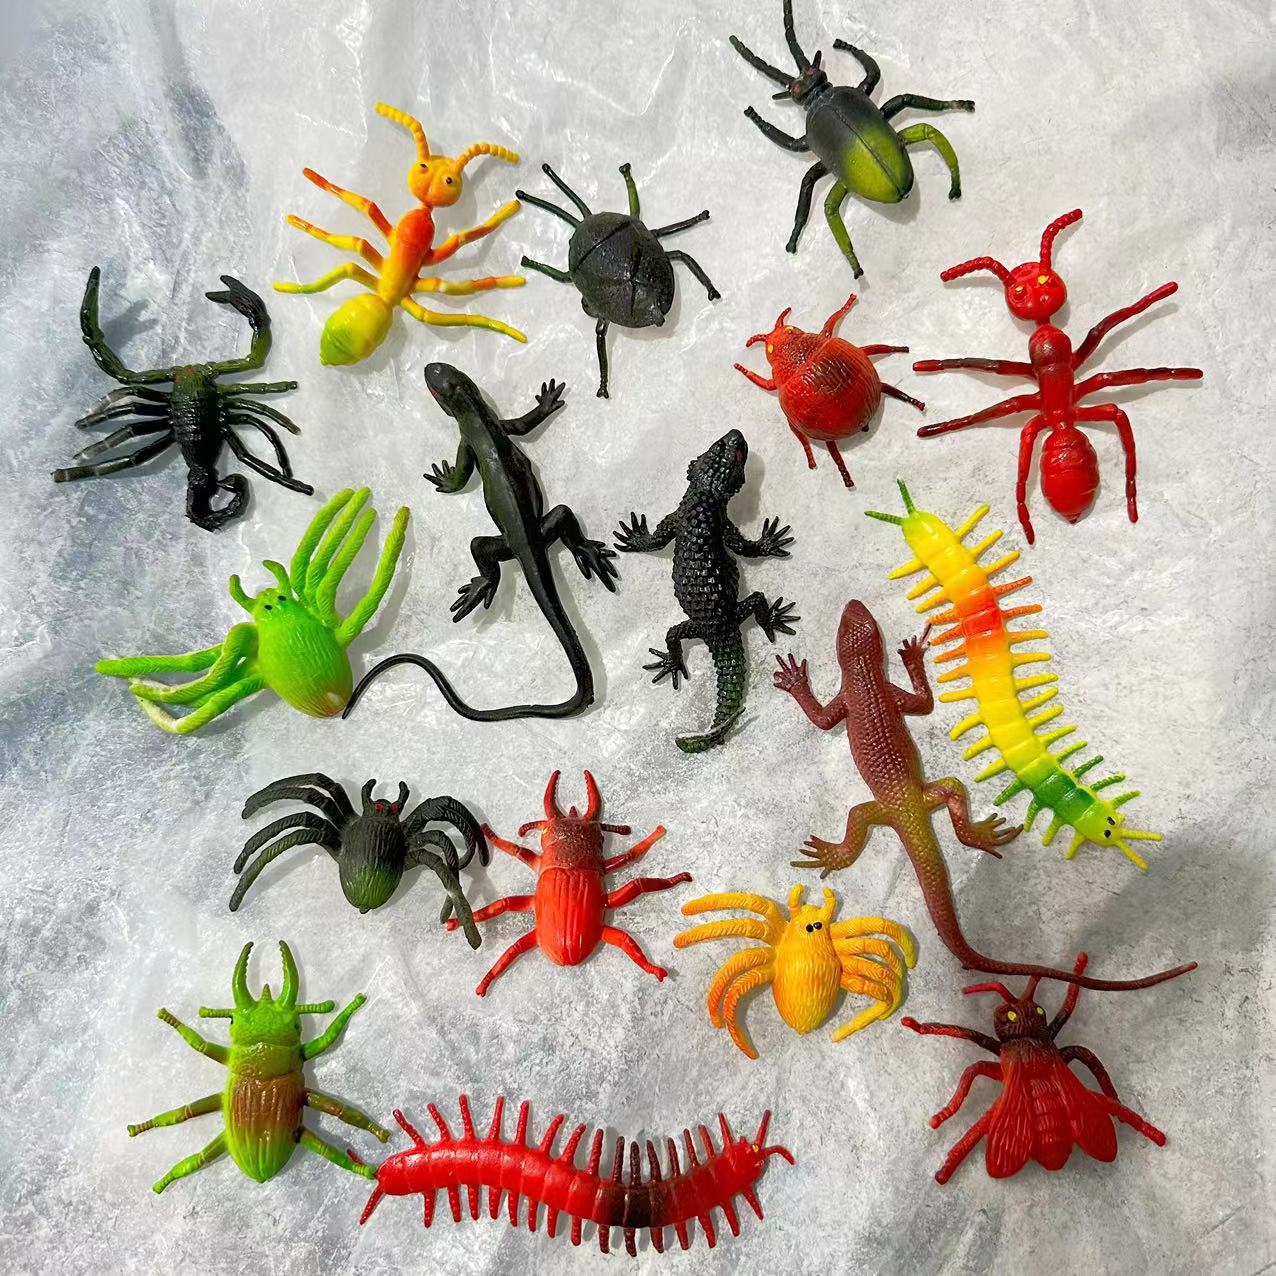 仿真昆虫软胶蜘蛛蝎子蜈蚣万圣节整蛊吓人恶搞小动物儿童玩具道具